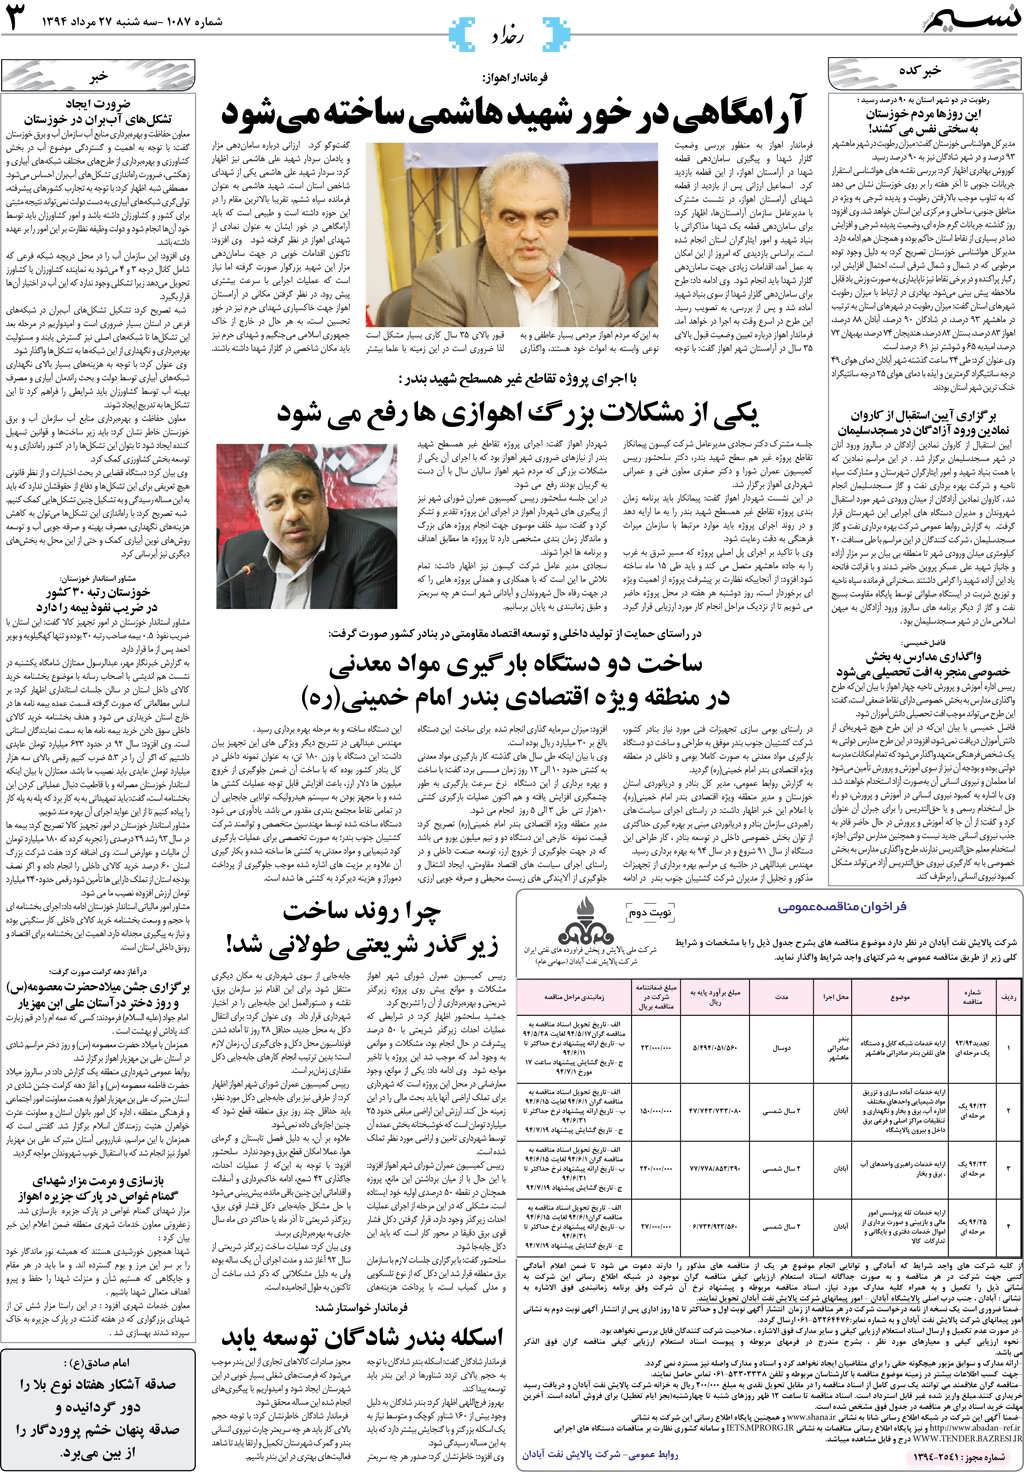 صفحه رخداد روزنامه نسیم شماره 1087